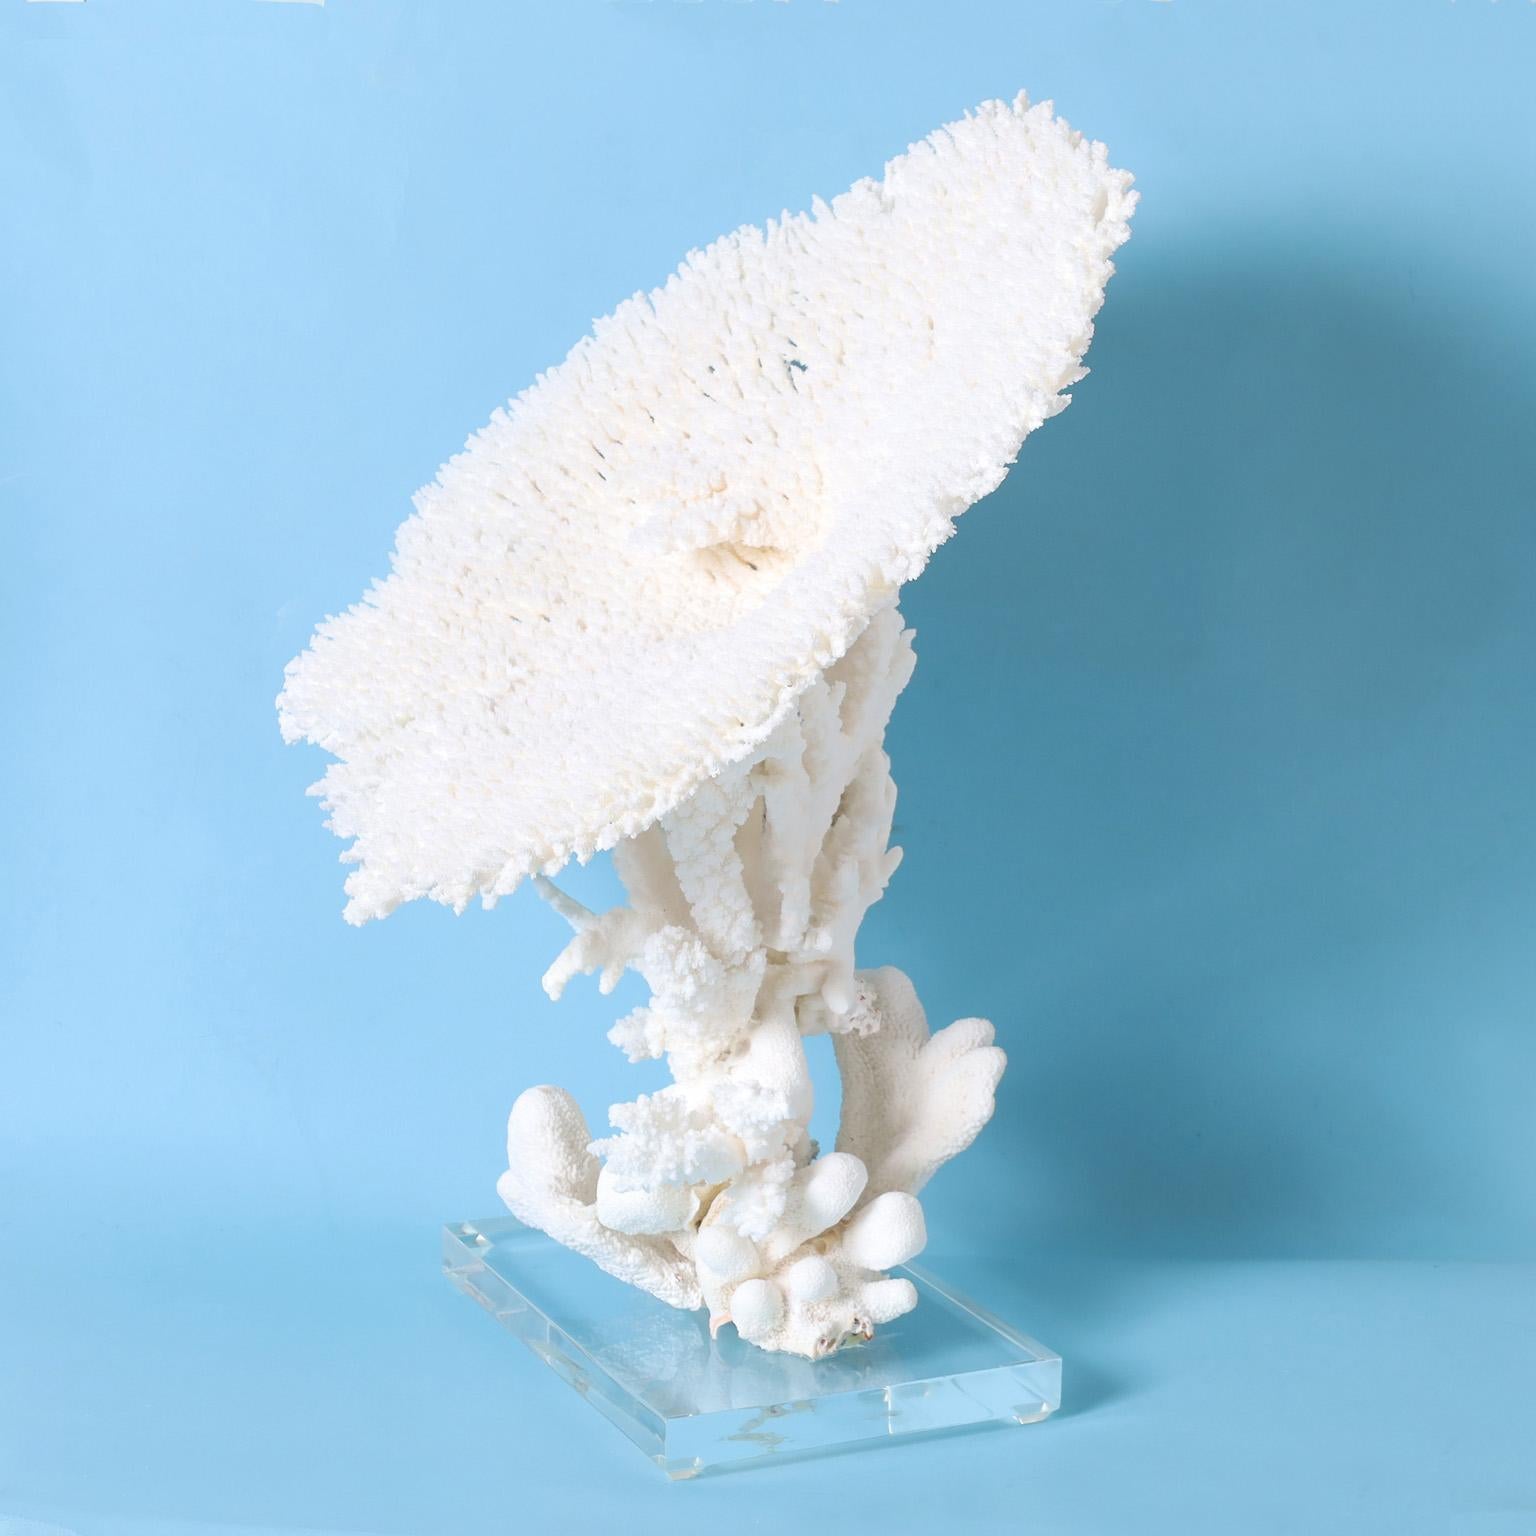 Beeindruckende Assemblage aus weißen Korallen unter Verwendung einer außergewöhnlich großen Tischkoralle, deren Farbe und Textur vom Meer inspiriert ist. Präsentiert auf einem Sockel aus Lucit, der die skulpturalen Elemente hervorhebt.

Sie sind nur